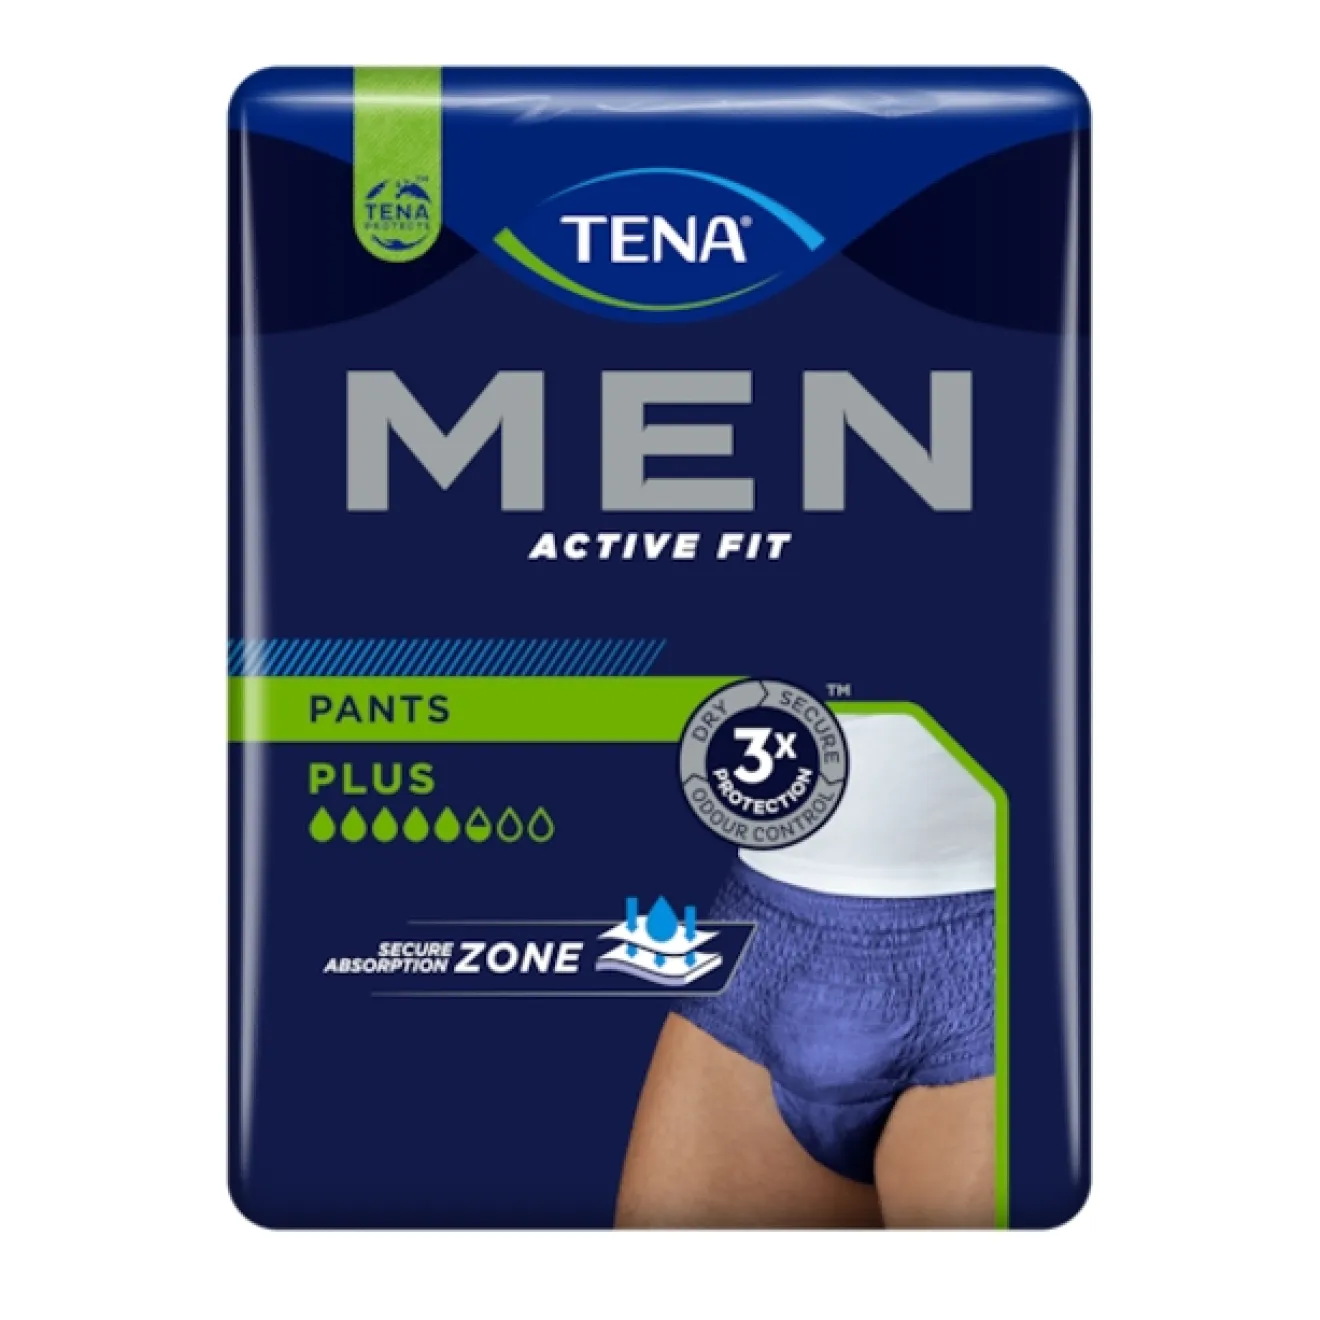 TENA MEN Active Fit Inkontinenz Pants plus S/M blau 12 ST